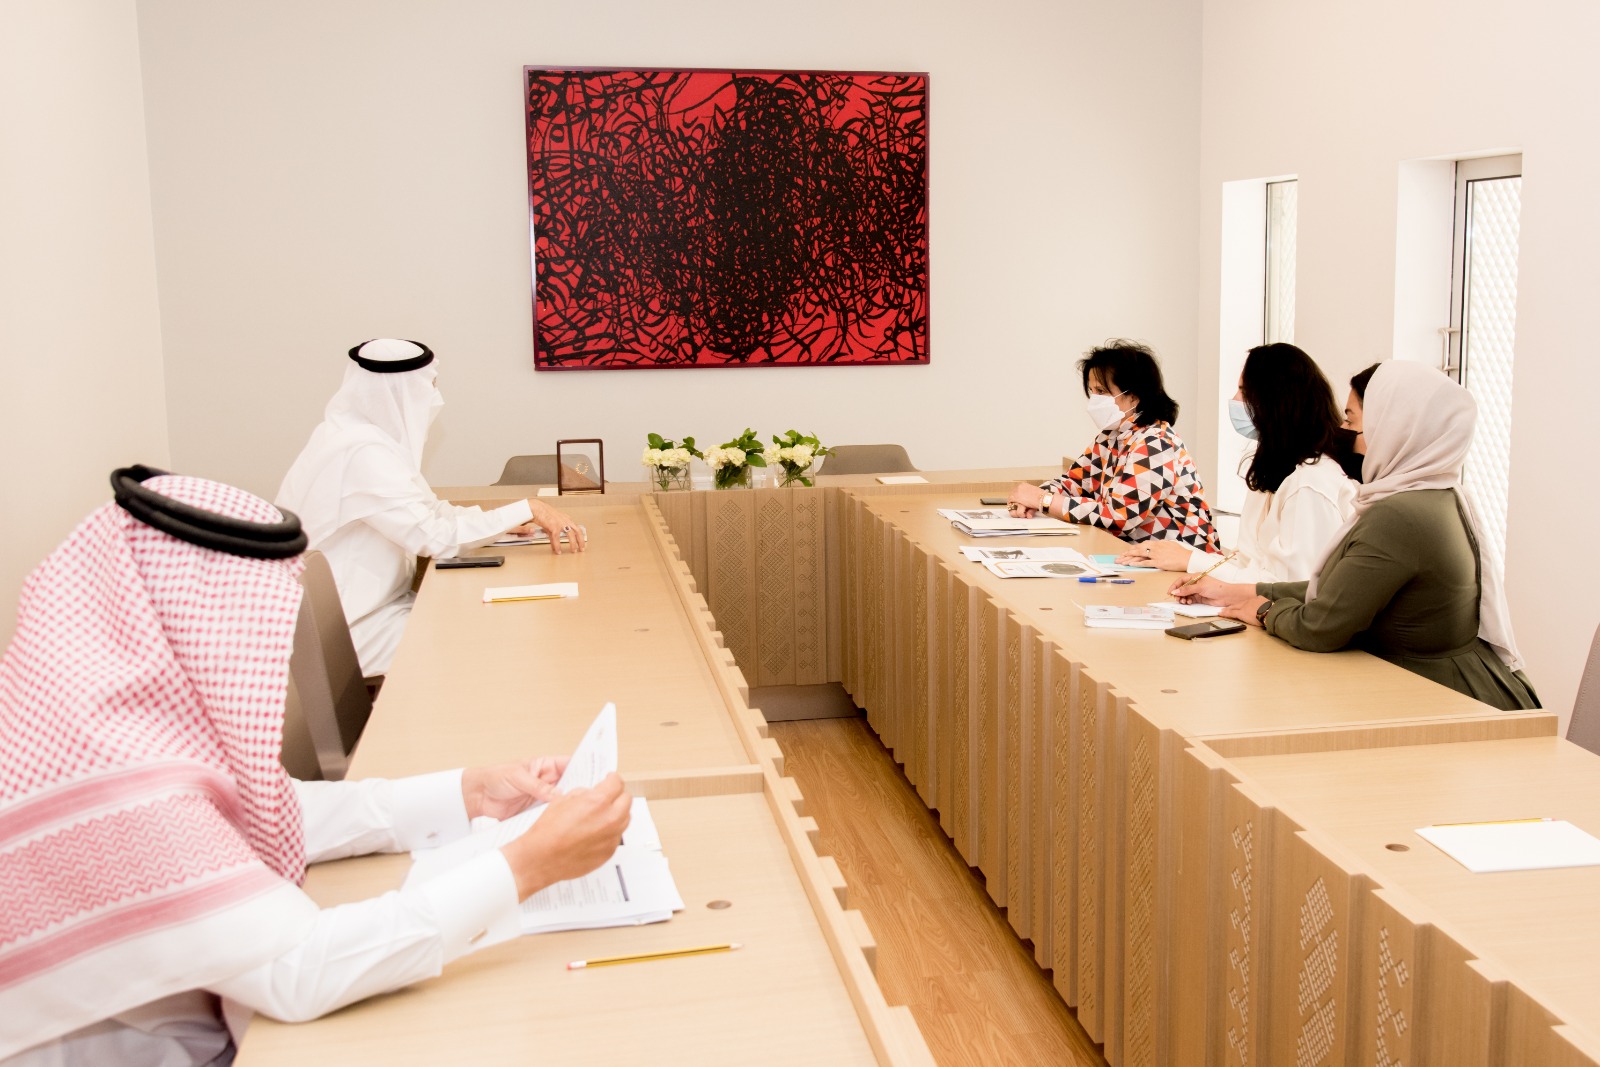 BahrainNOW.net | هيئة الثقافة تتعاون مع المجلس الأعلى للشؤون الإسلامية للحفاظ على مساجد البحرين التاريخية